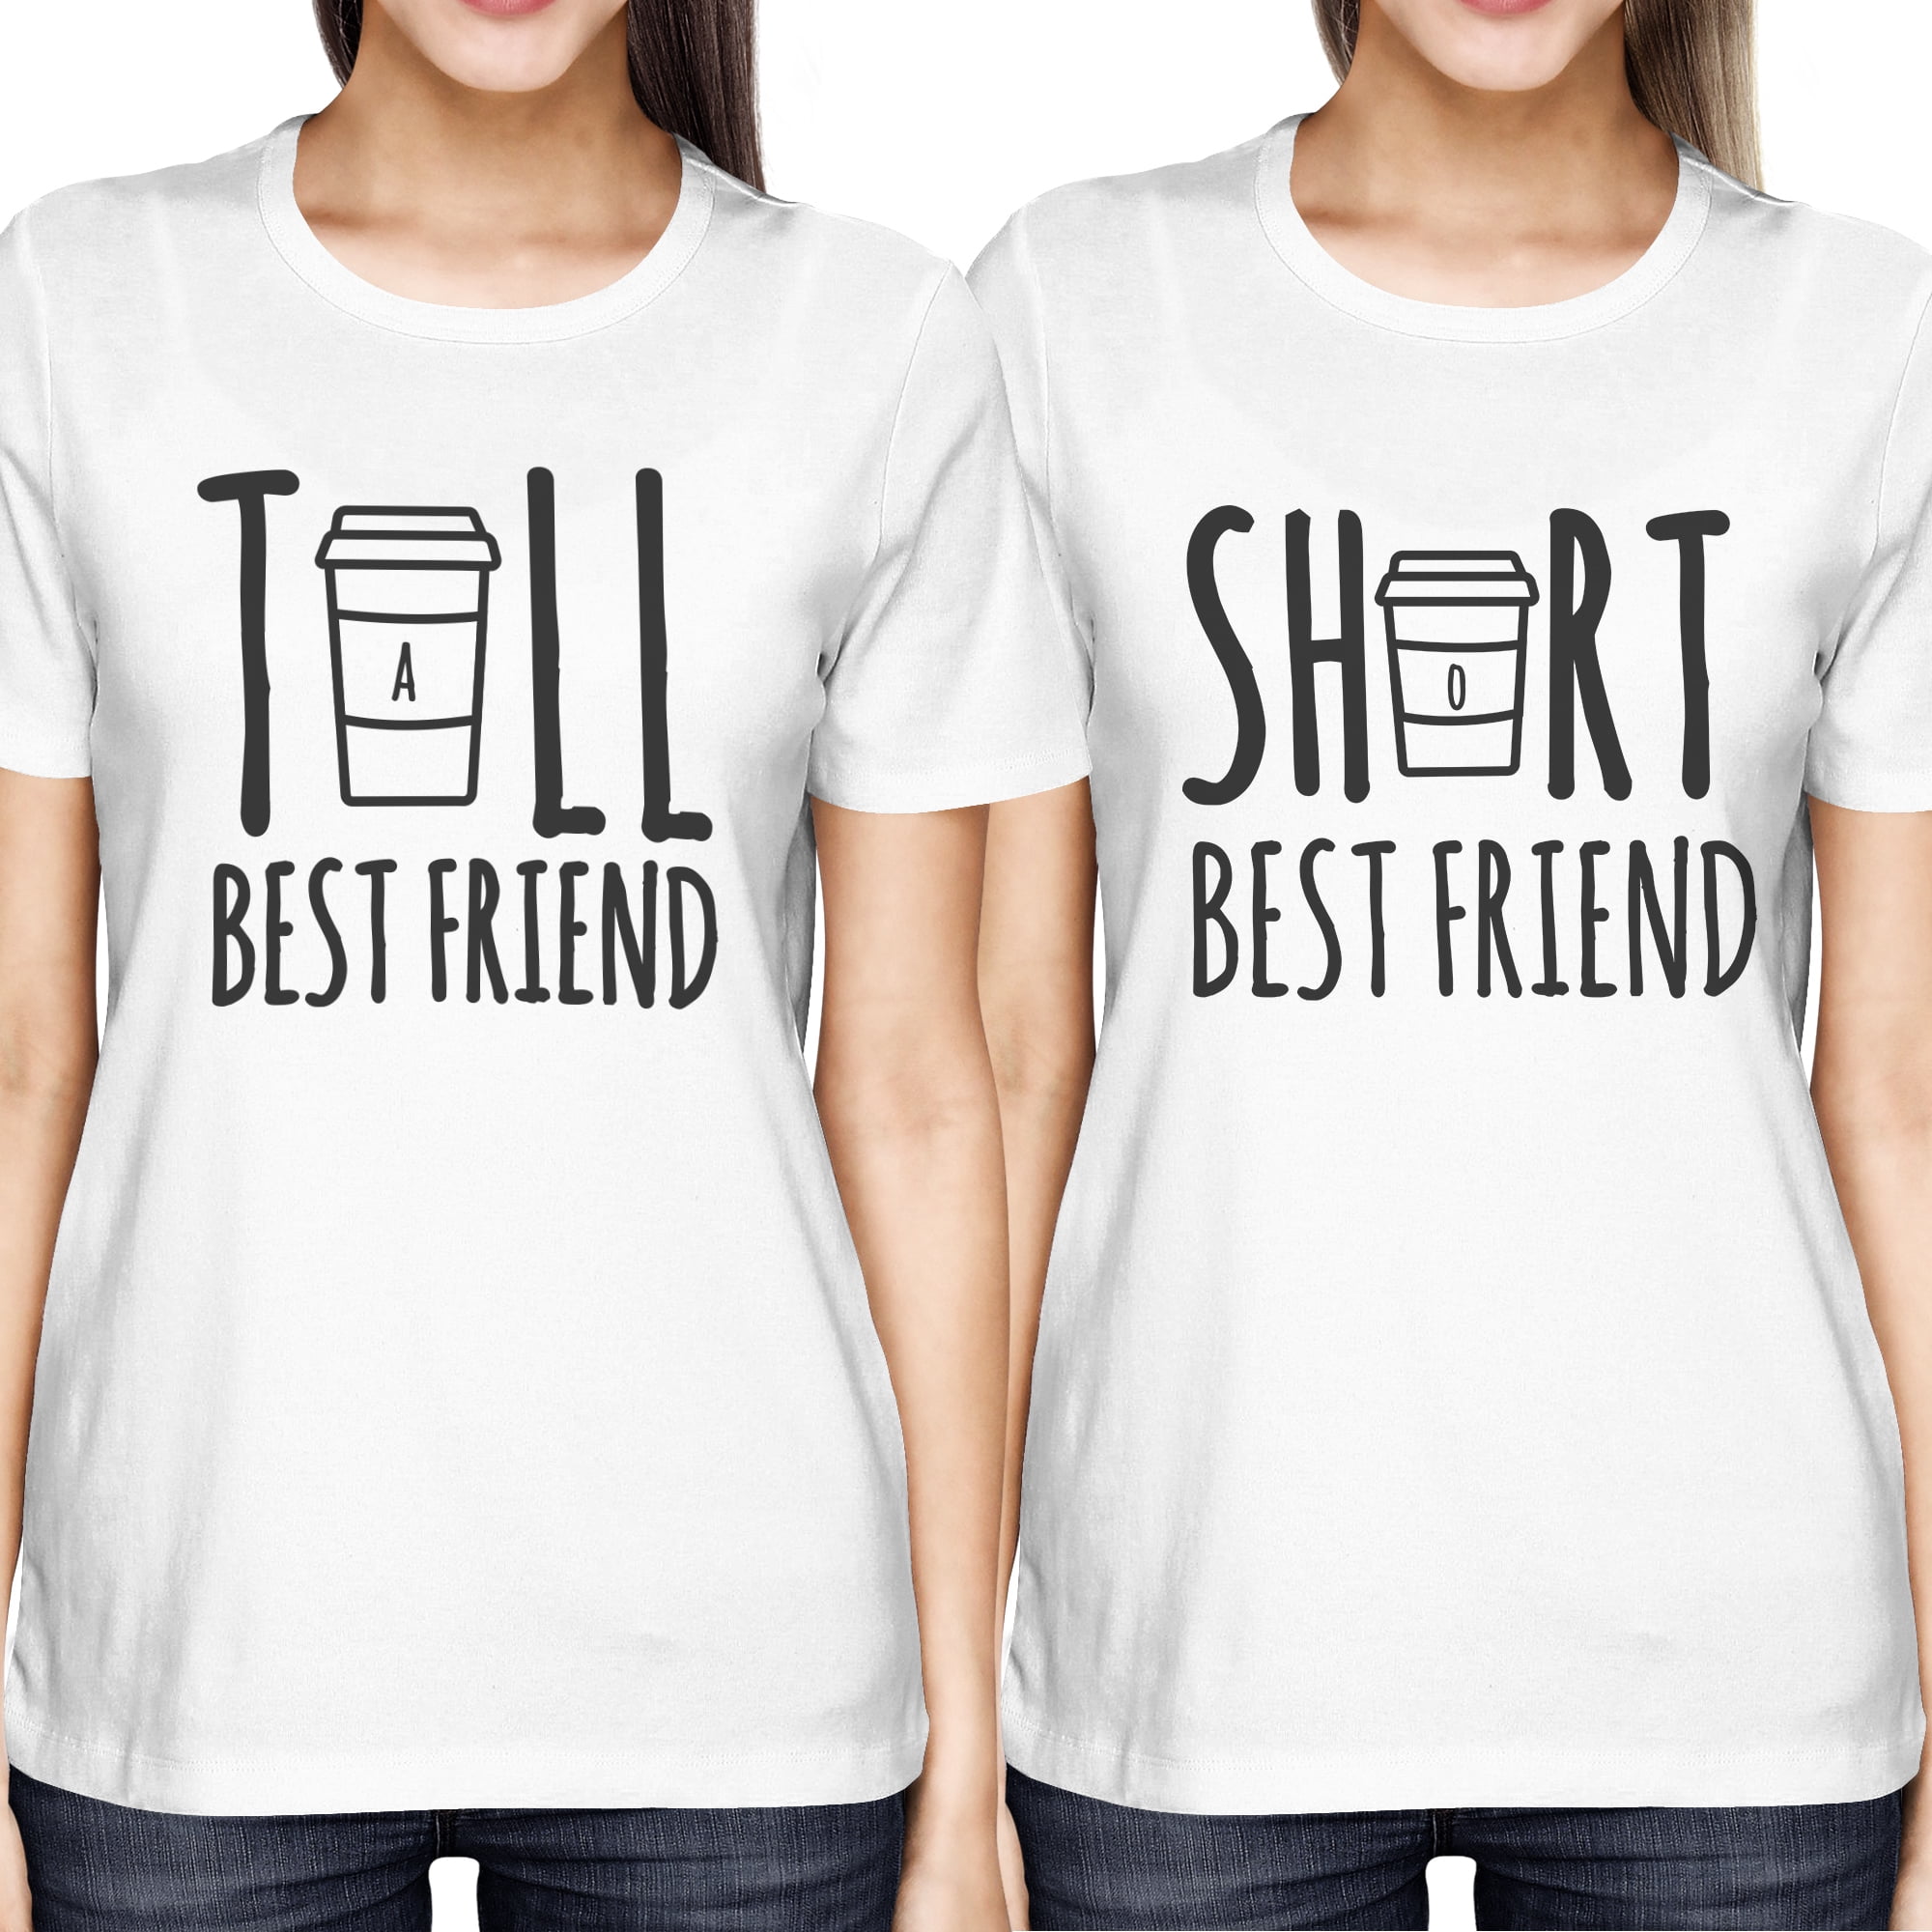 Matching Best Friends Shirts